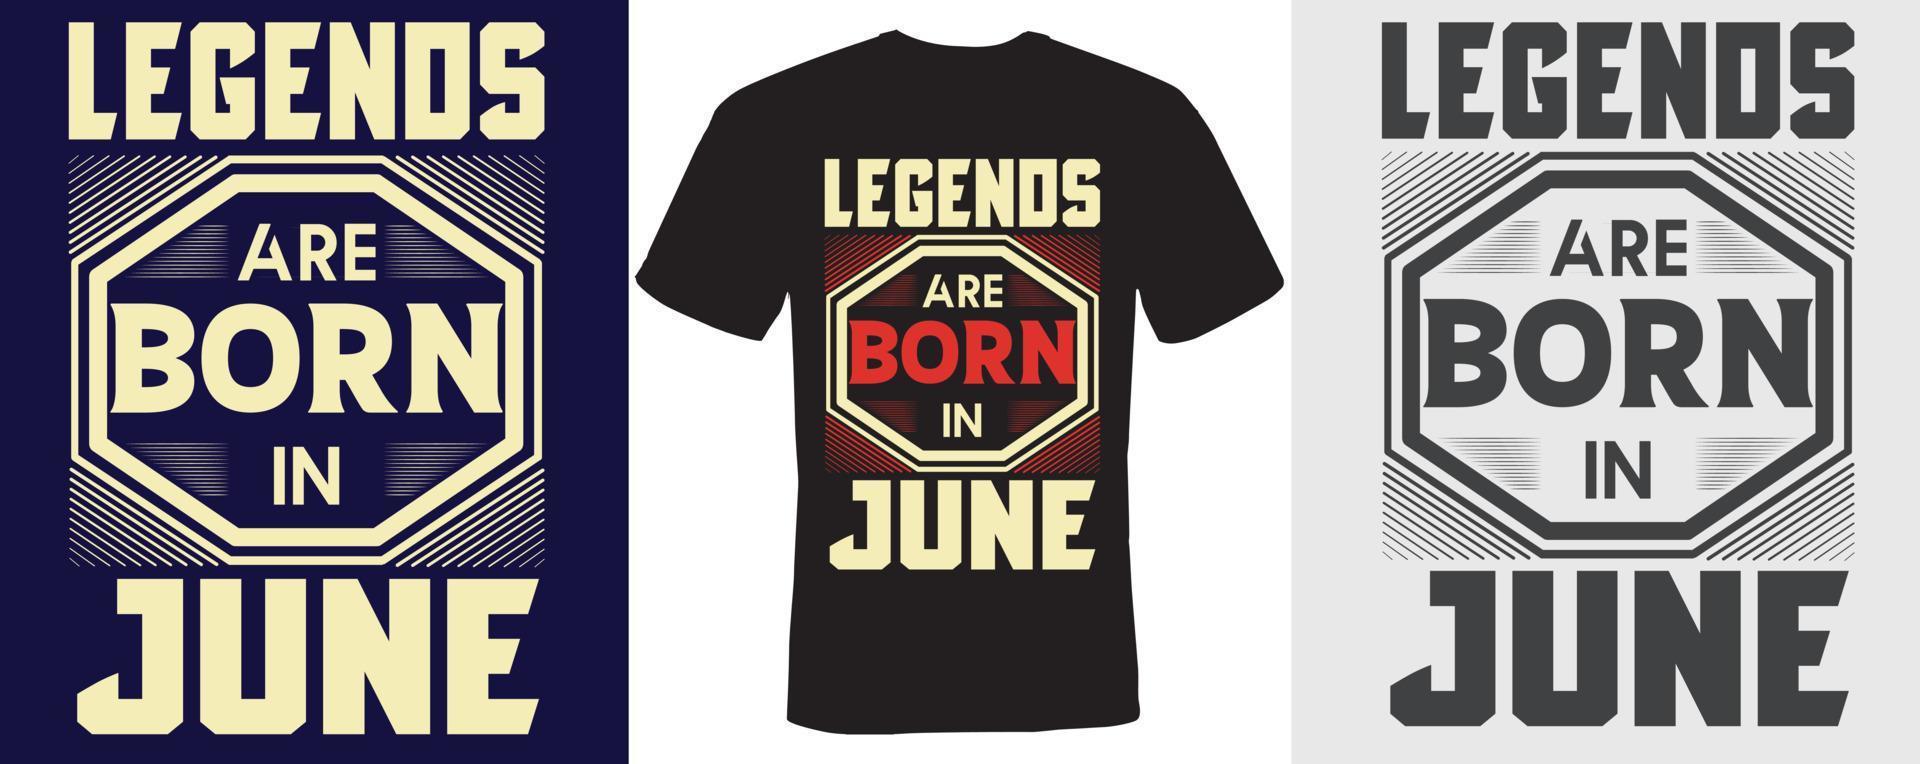 legender är födda i juni t-shirt design för juni vektor